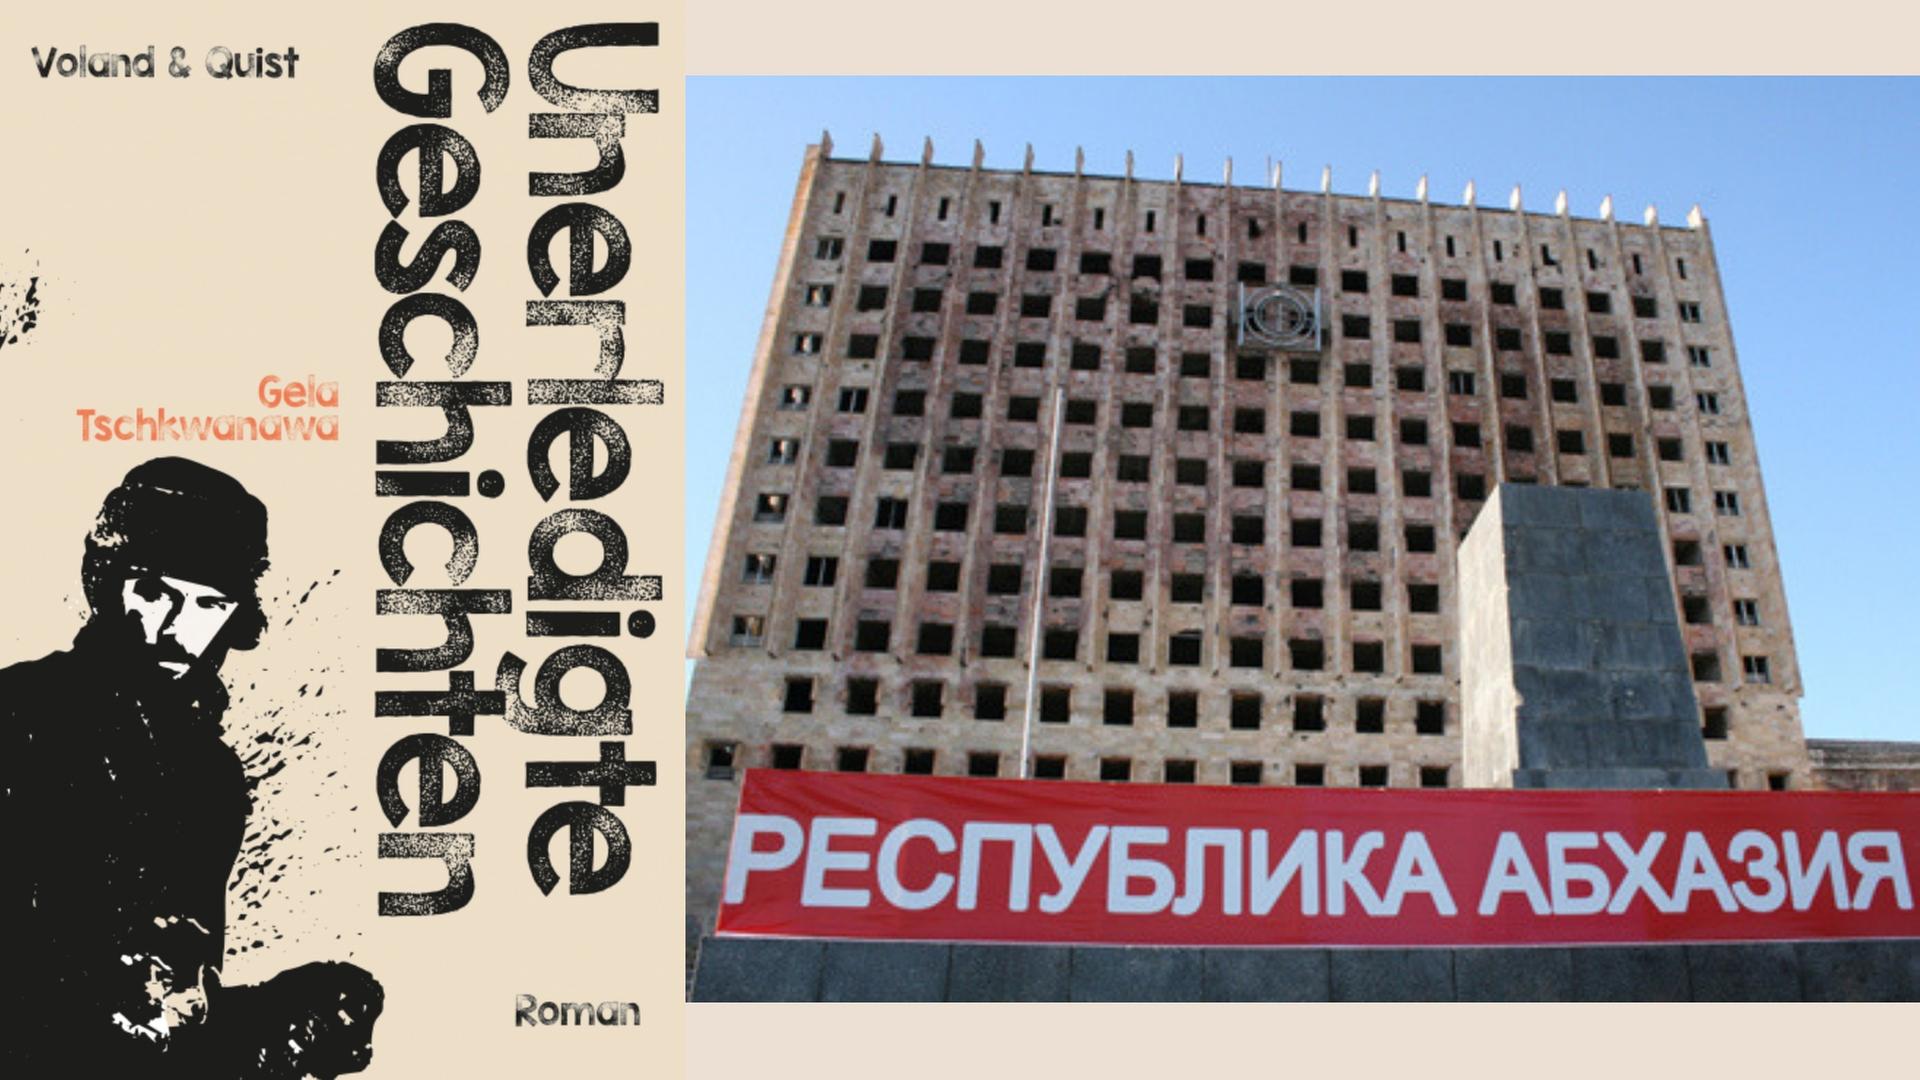 Buchcover: Gela Tschkwanawa: „Unerledigte Geschichten“ und der Regierungssitz in Suchumi in der georgischen Provinz Abchasien (1992-1993 zerbombt), davor die Aufschrift "Republik Abchasien" auf einemTransparent